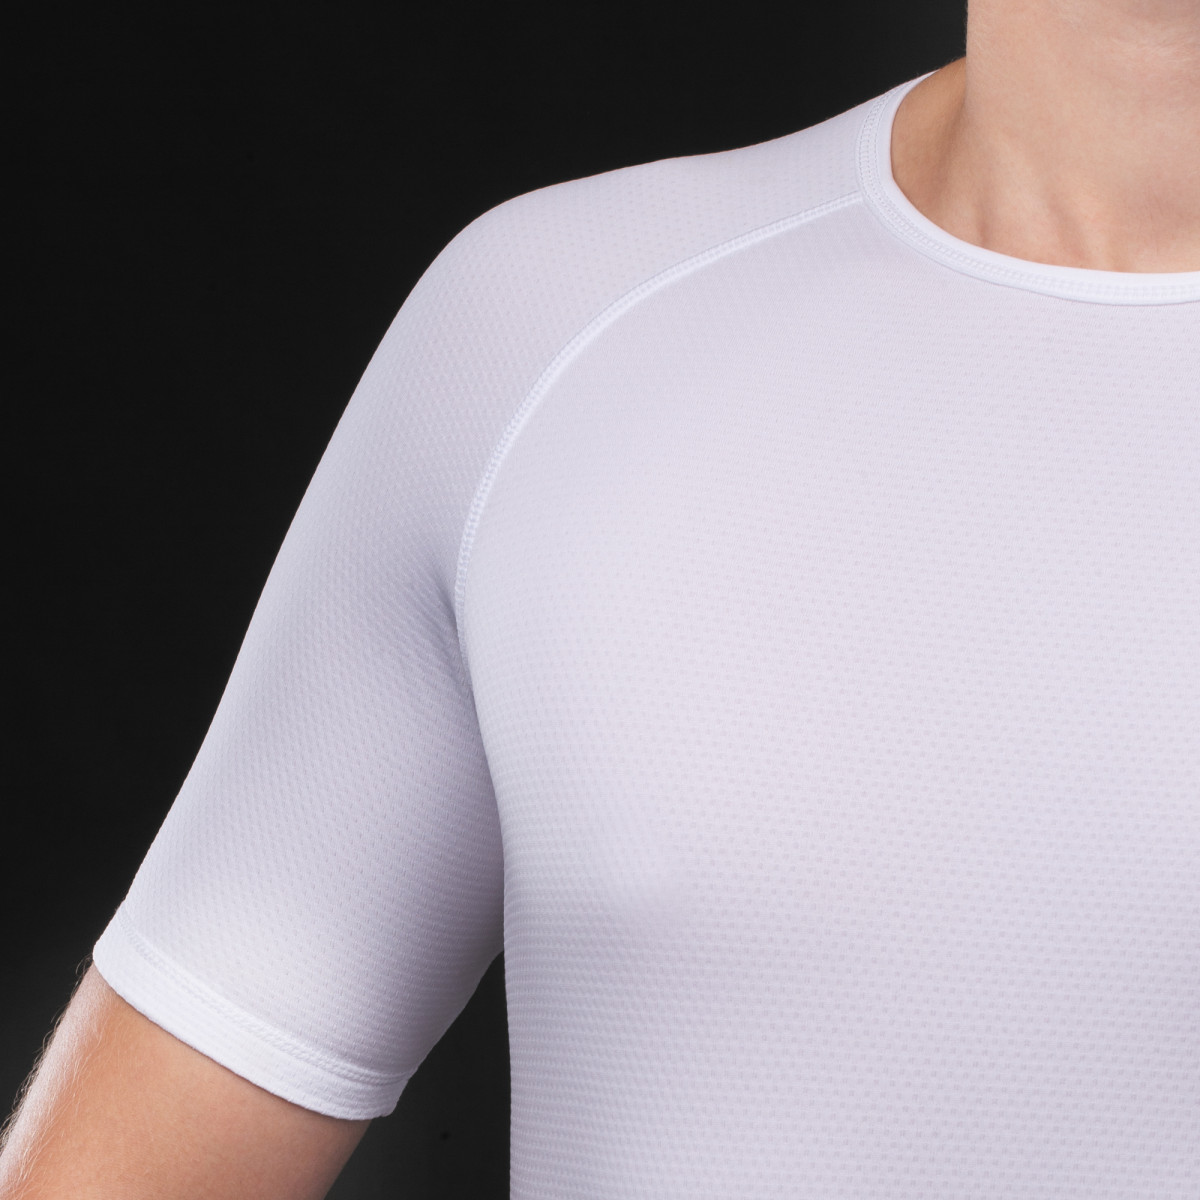 GripGrab Ride Thermal Short Sleeve apatiniai marškinėliai / White